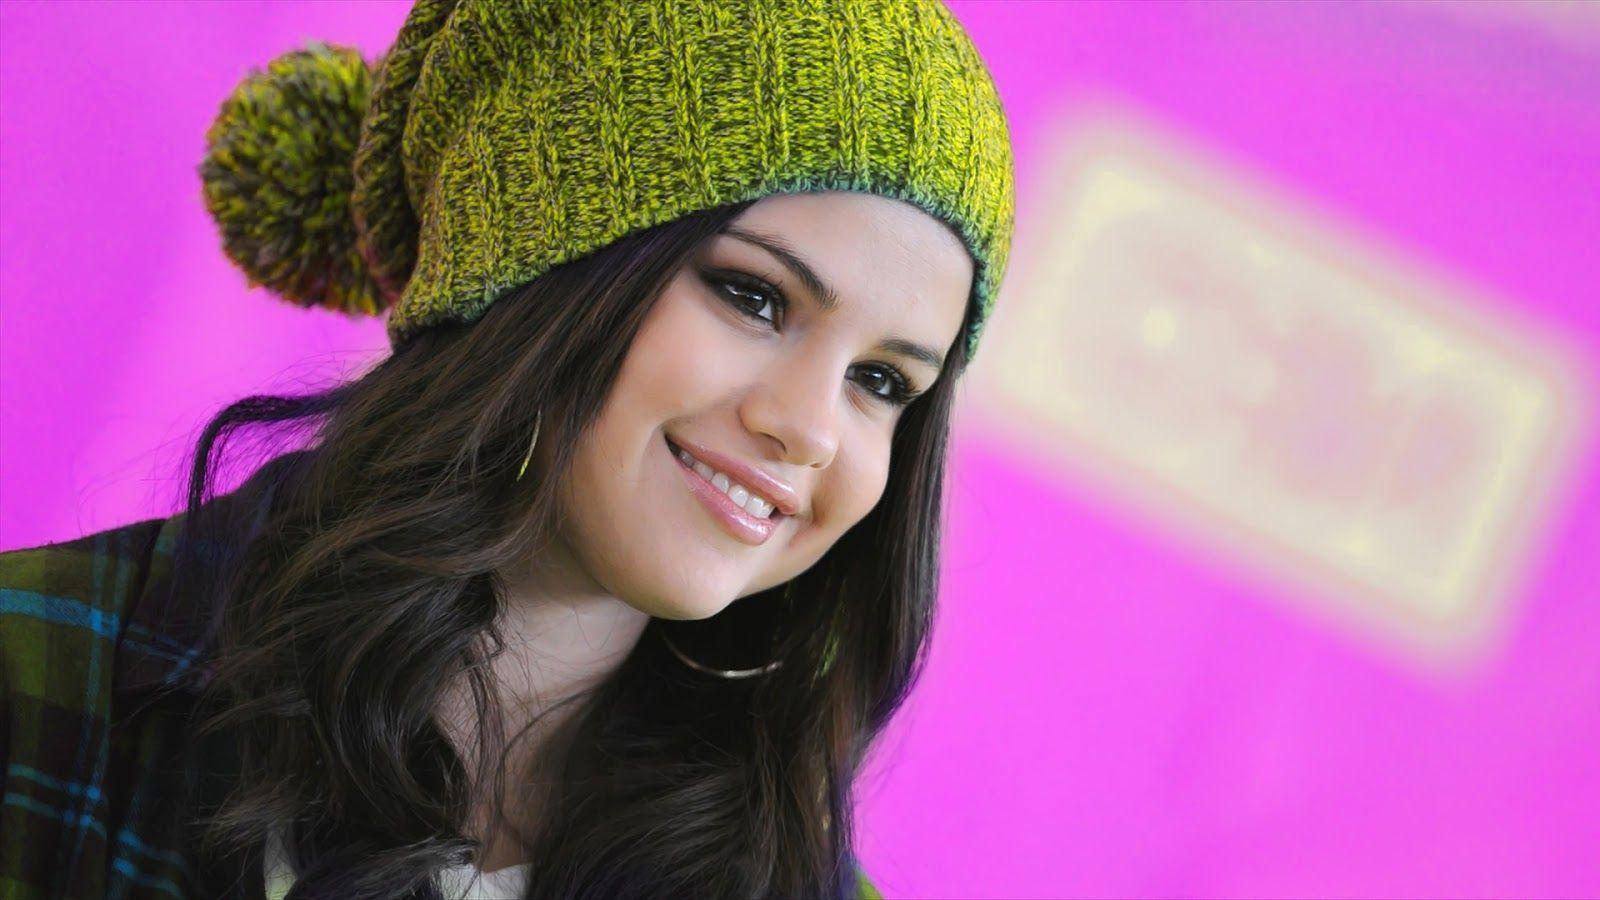 Cute Smile Selena Gomez Wallpaper 2014 PixJoJo Pix